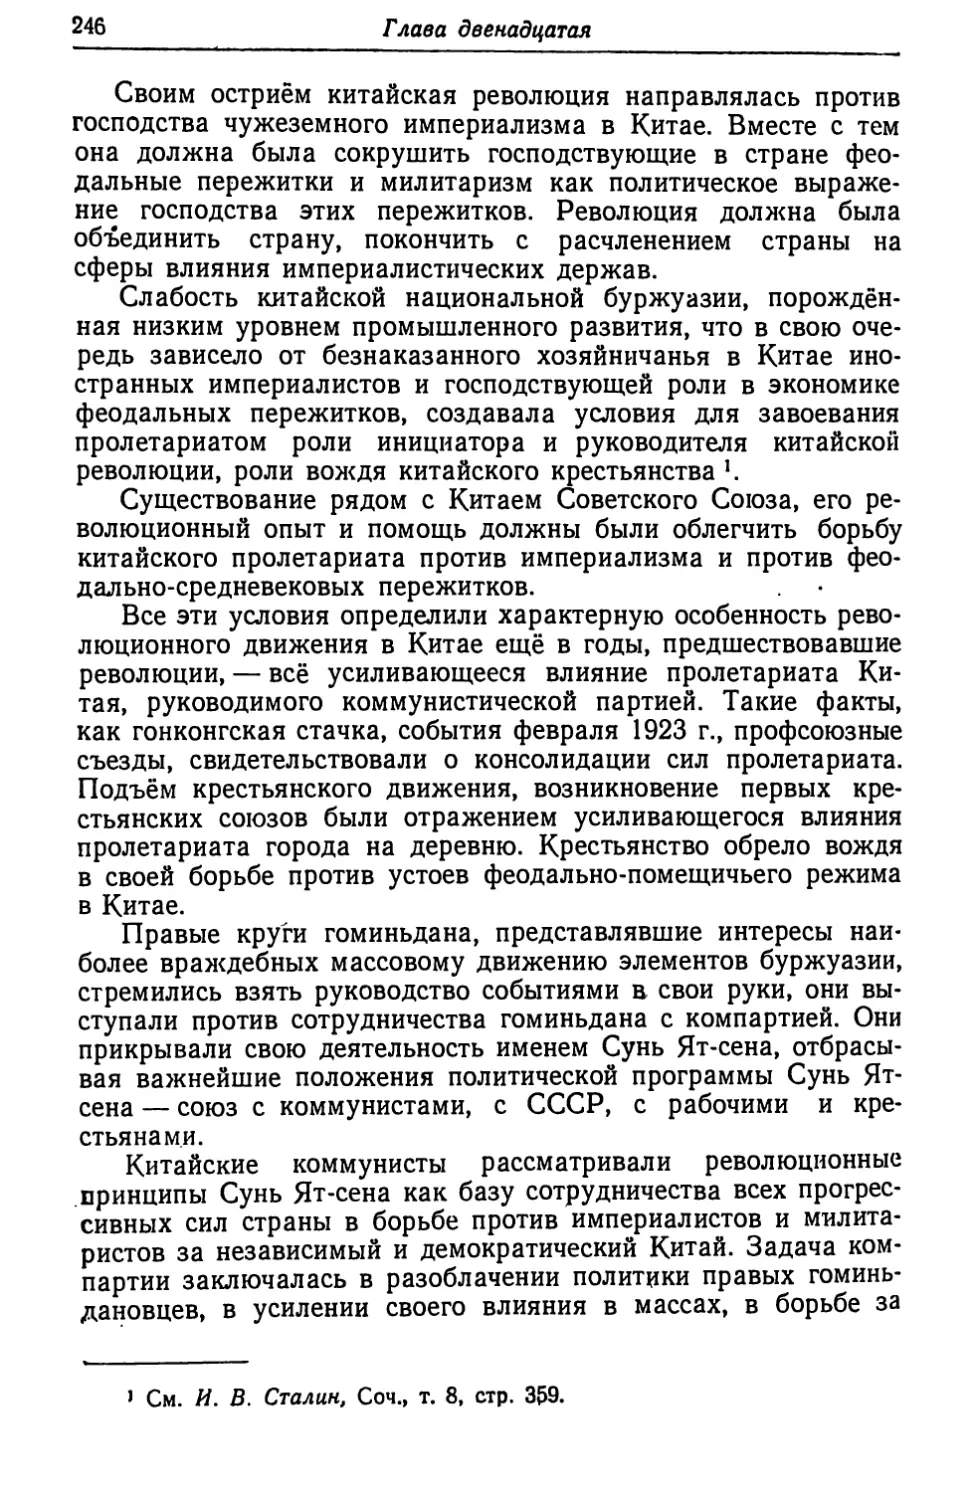 Глава двенадцатая. КИТАЙСКАЯ РЕВОЛЮЦИЯ 1925-1927 гг.